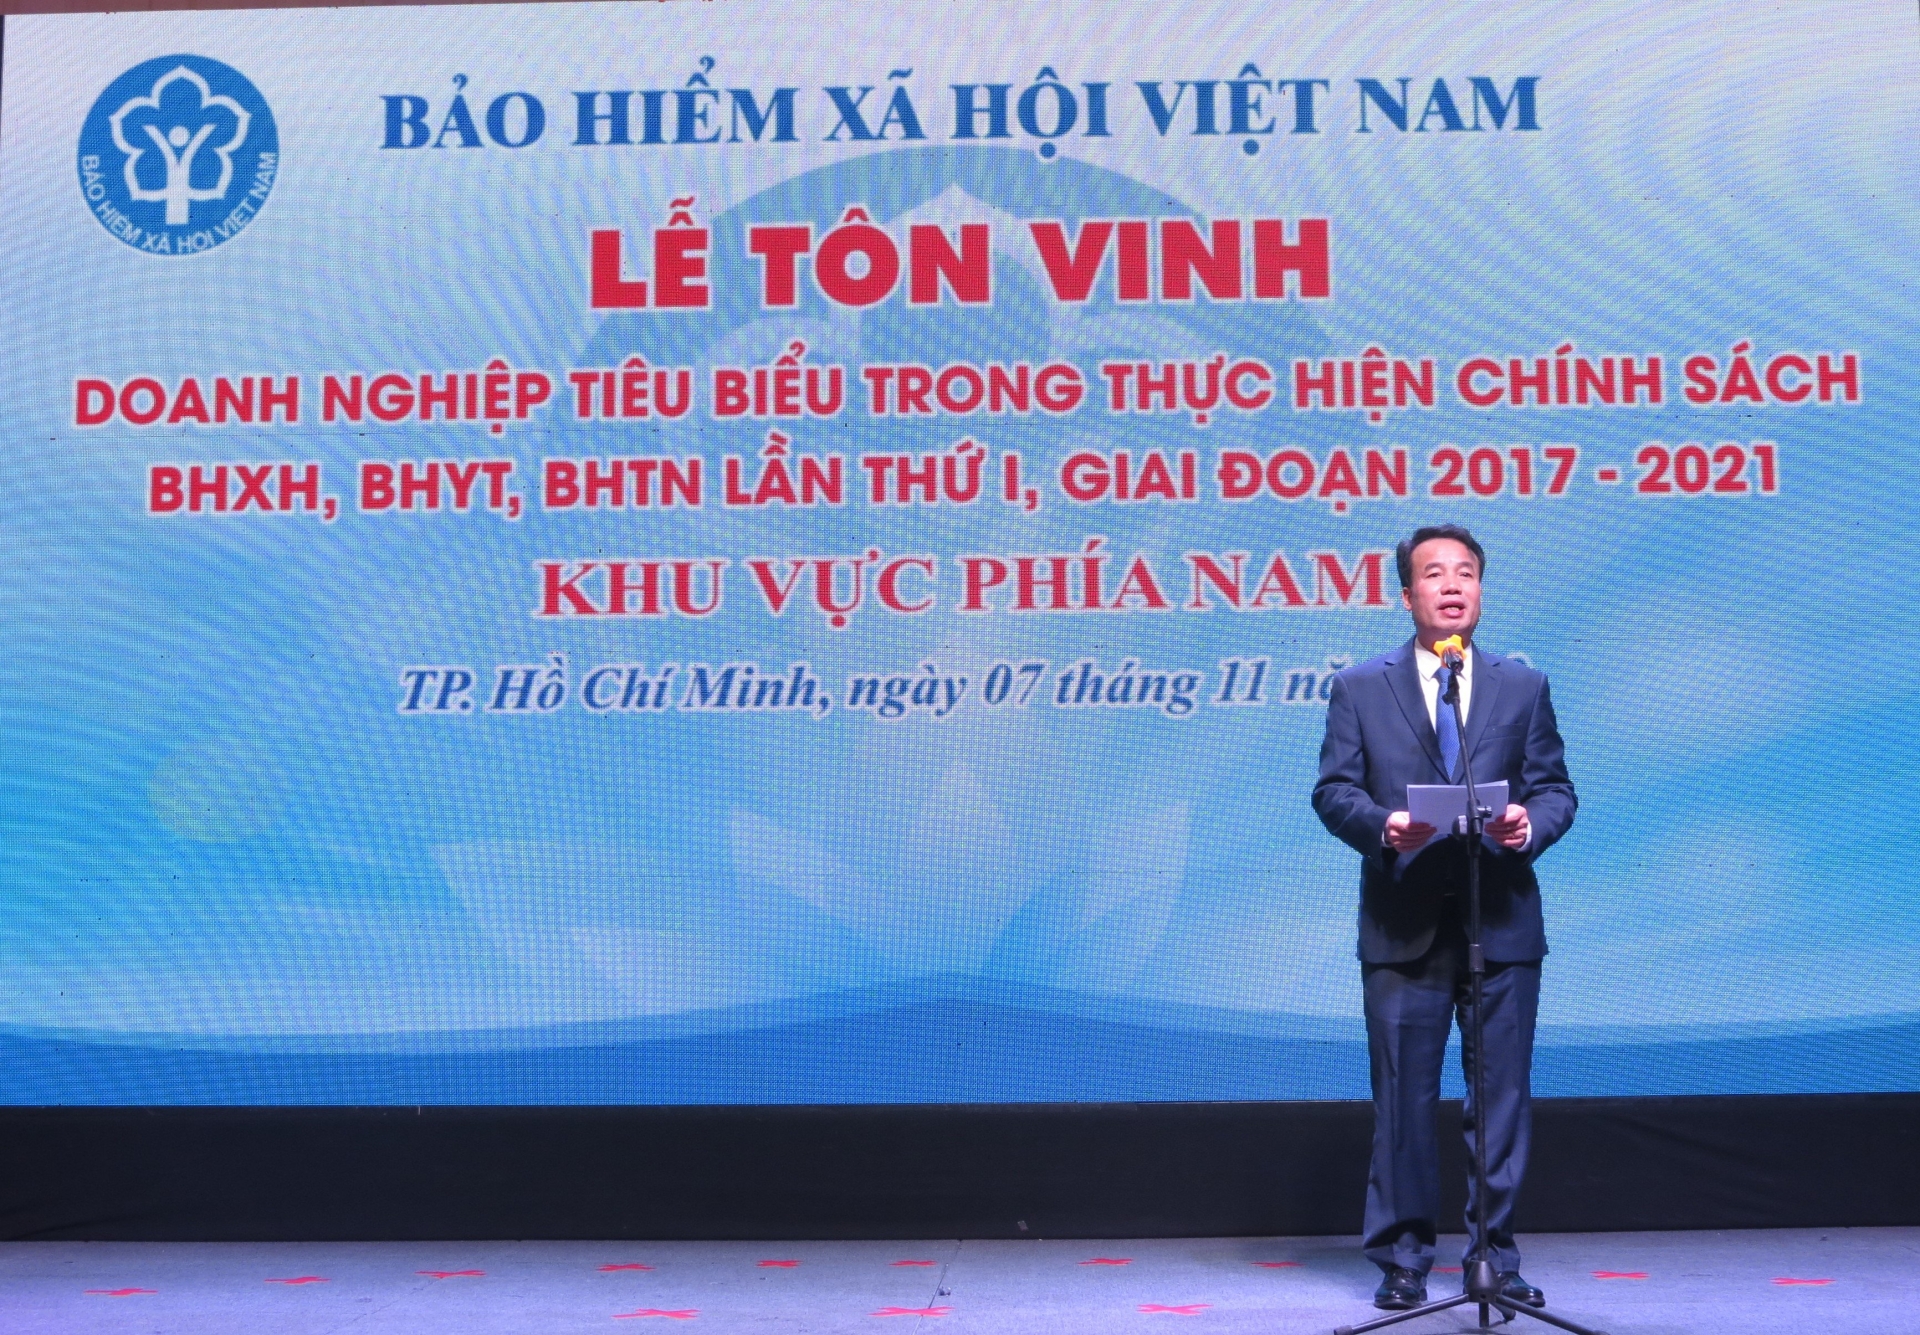 BHXH Việt Nam vinh danh 103 doanh nghiệp tiêu biểu phía Nam trong thực hiện chính sách BHXH, BHYT